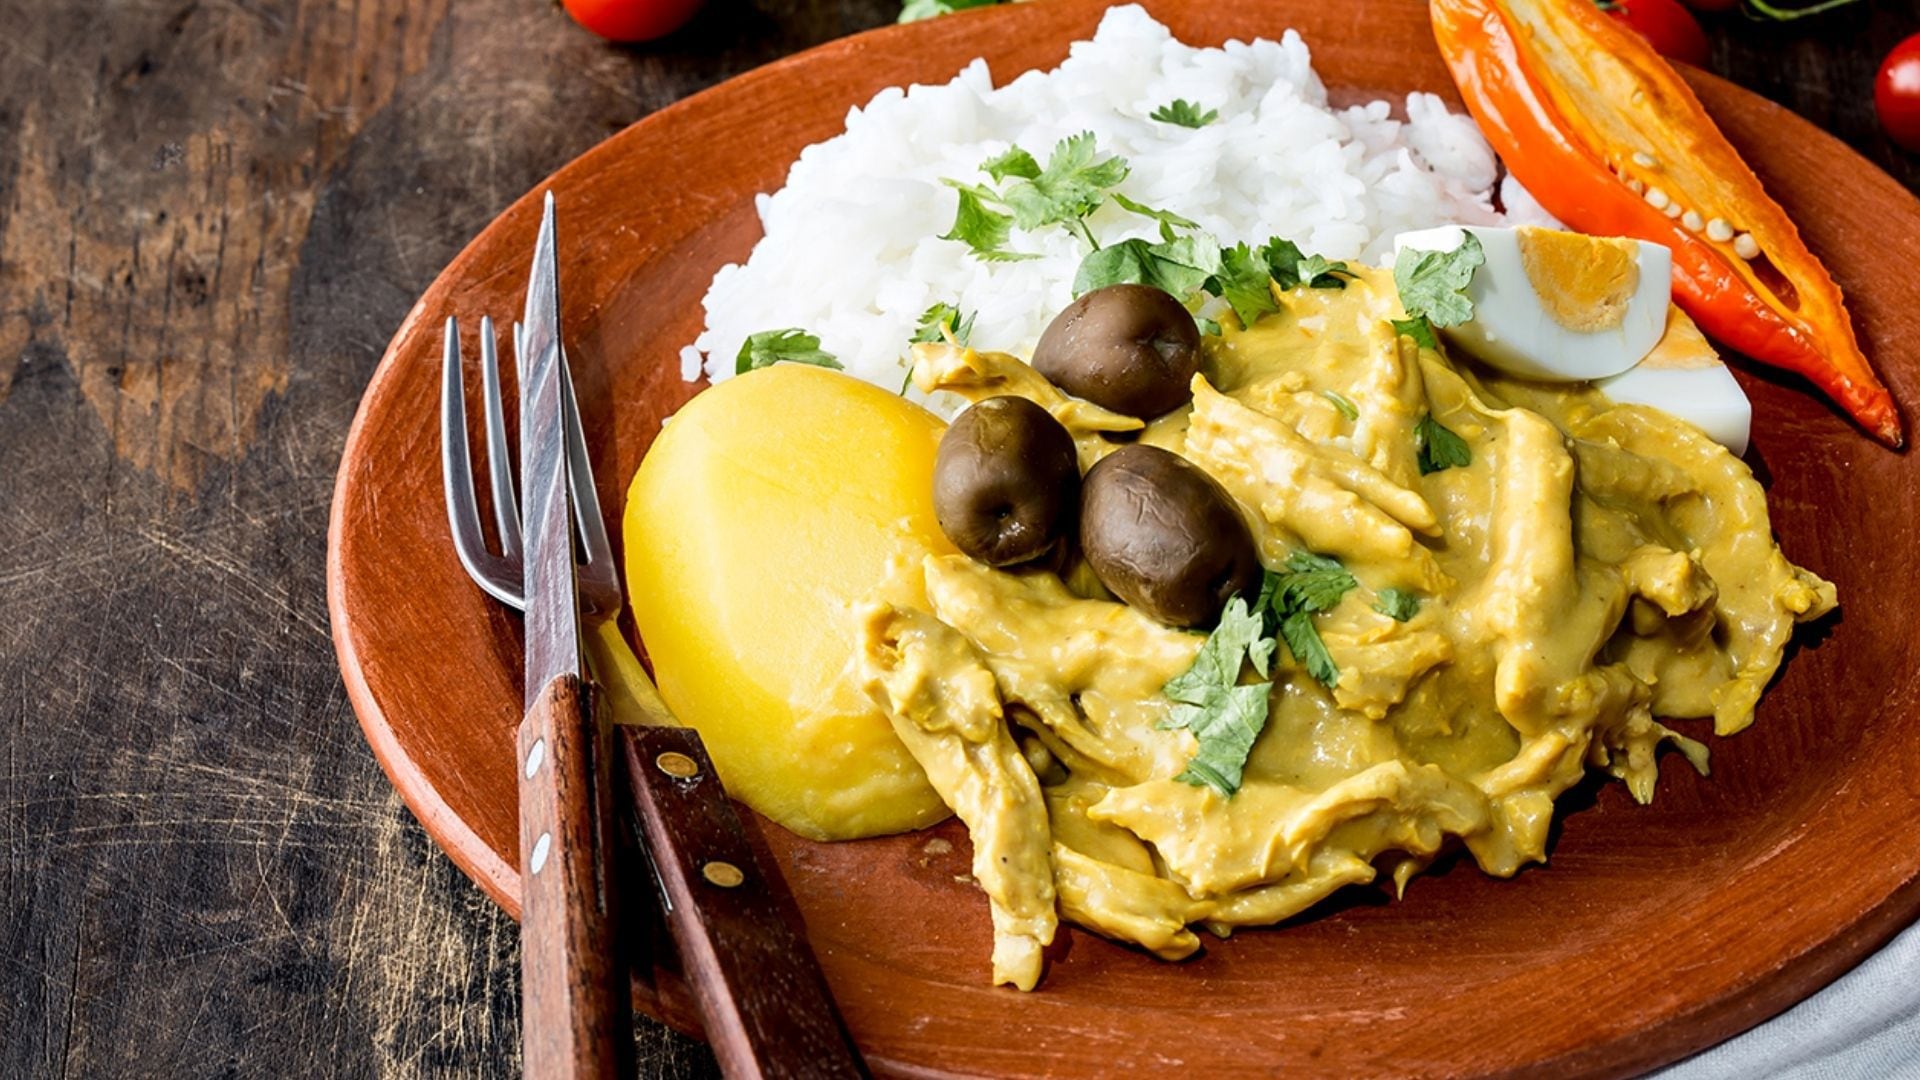 Platillos como el ají de gallina ejemplifican la habilidad del país para adaptar y transformar sus ingredientes en creaciones culinarias. Foto: Peru travel.